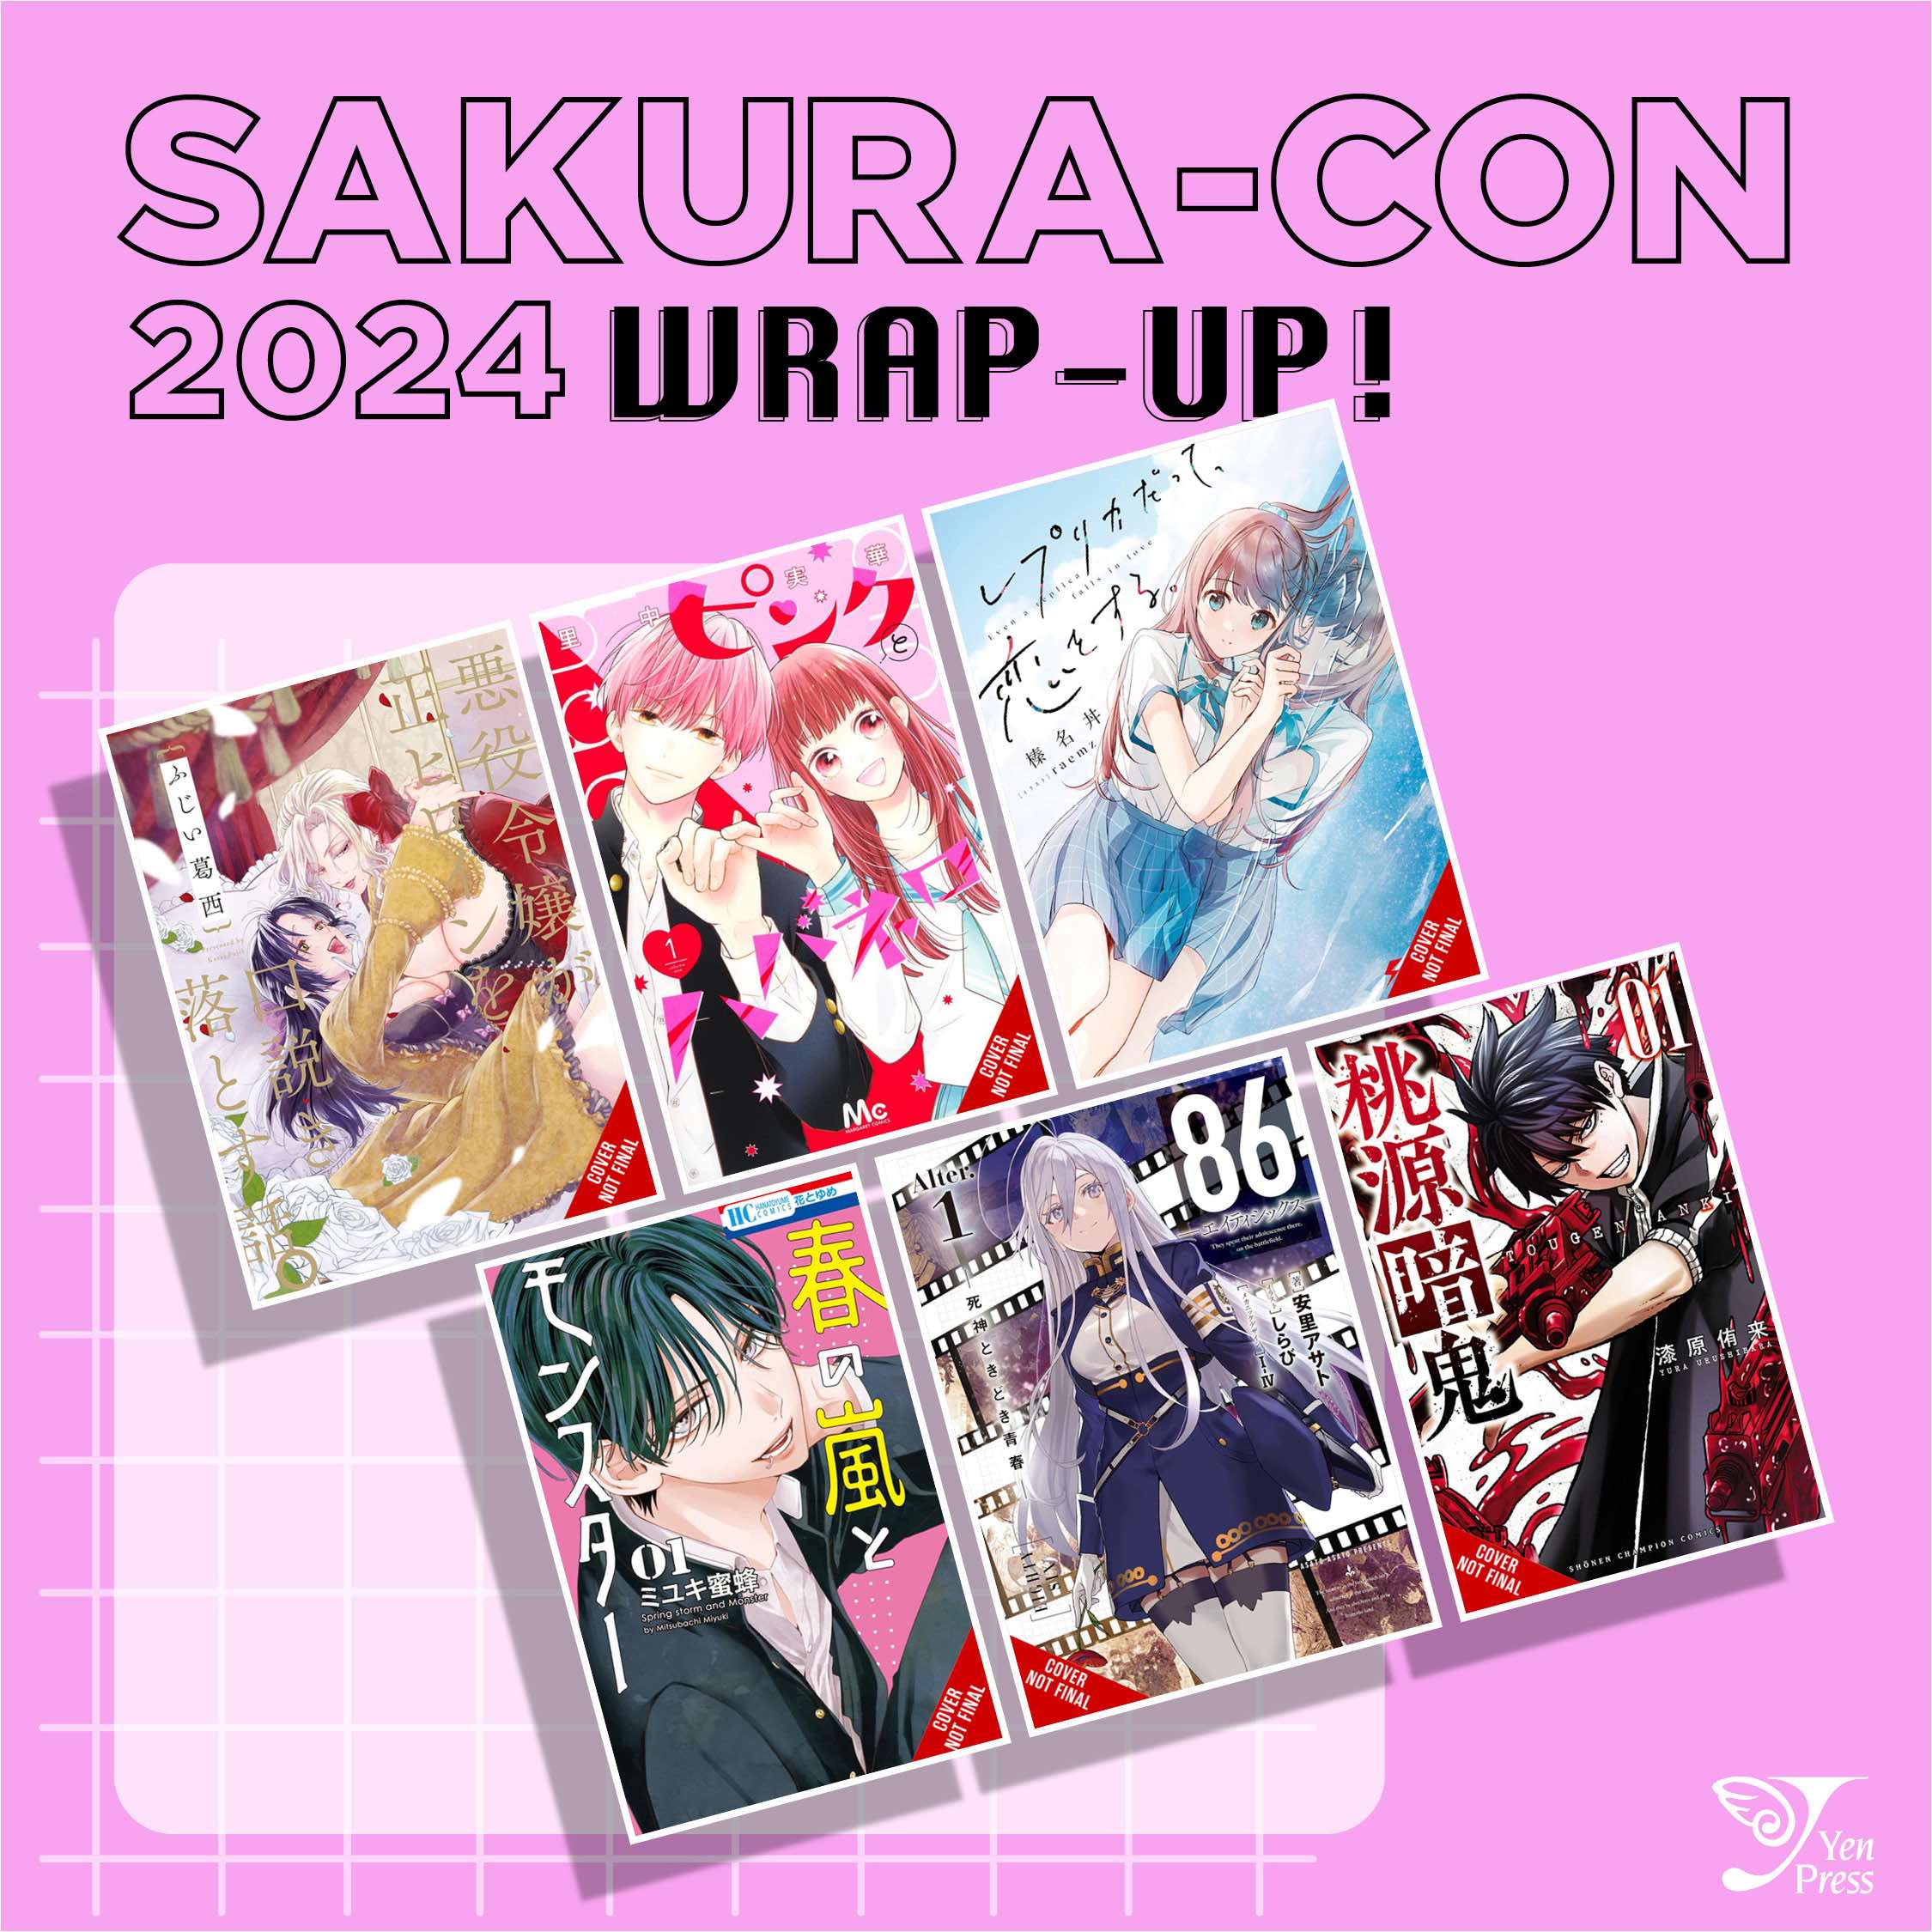 Announcement Recap from Sakura-Con 2024